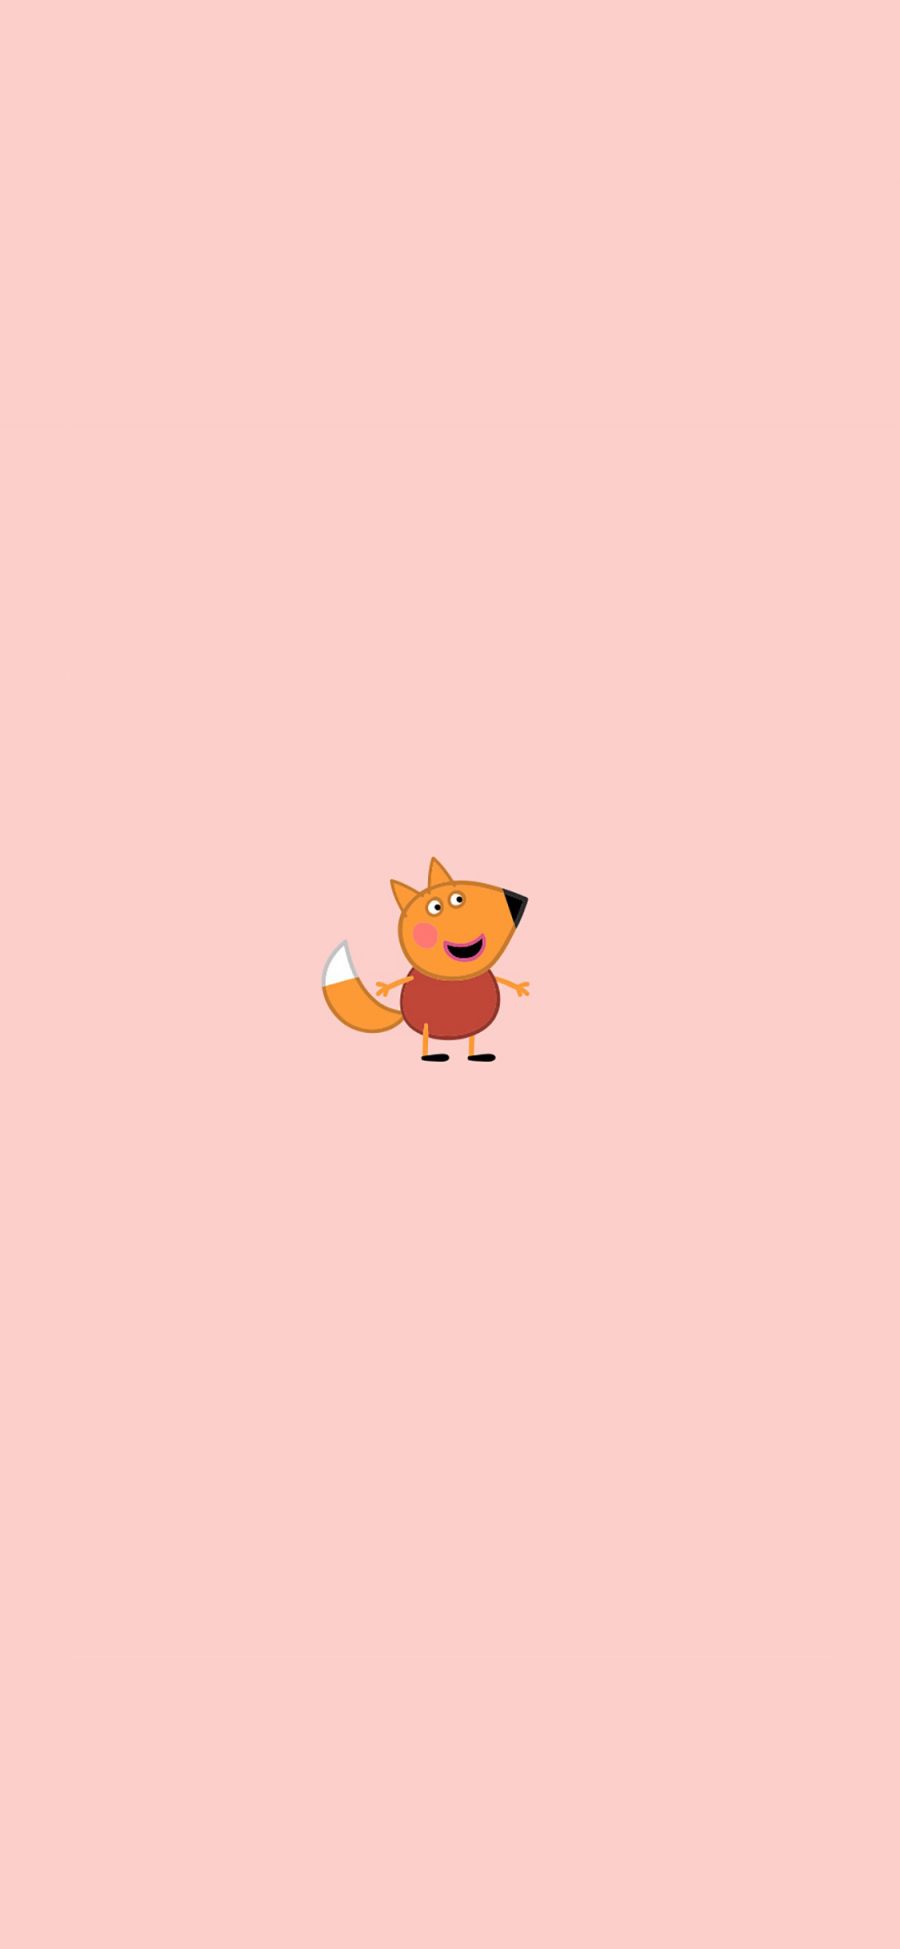 [2436×1125]狐狸 动画 粉色 小猪佩奇 可爱 苹果手机动漫壁纸图片